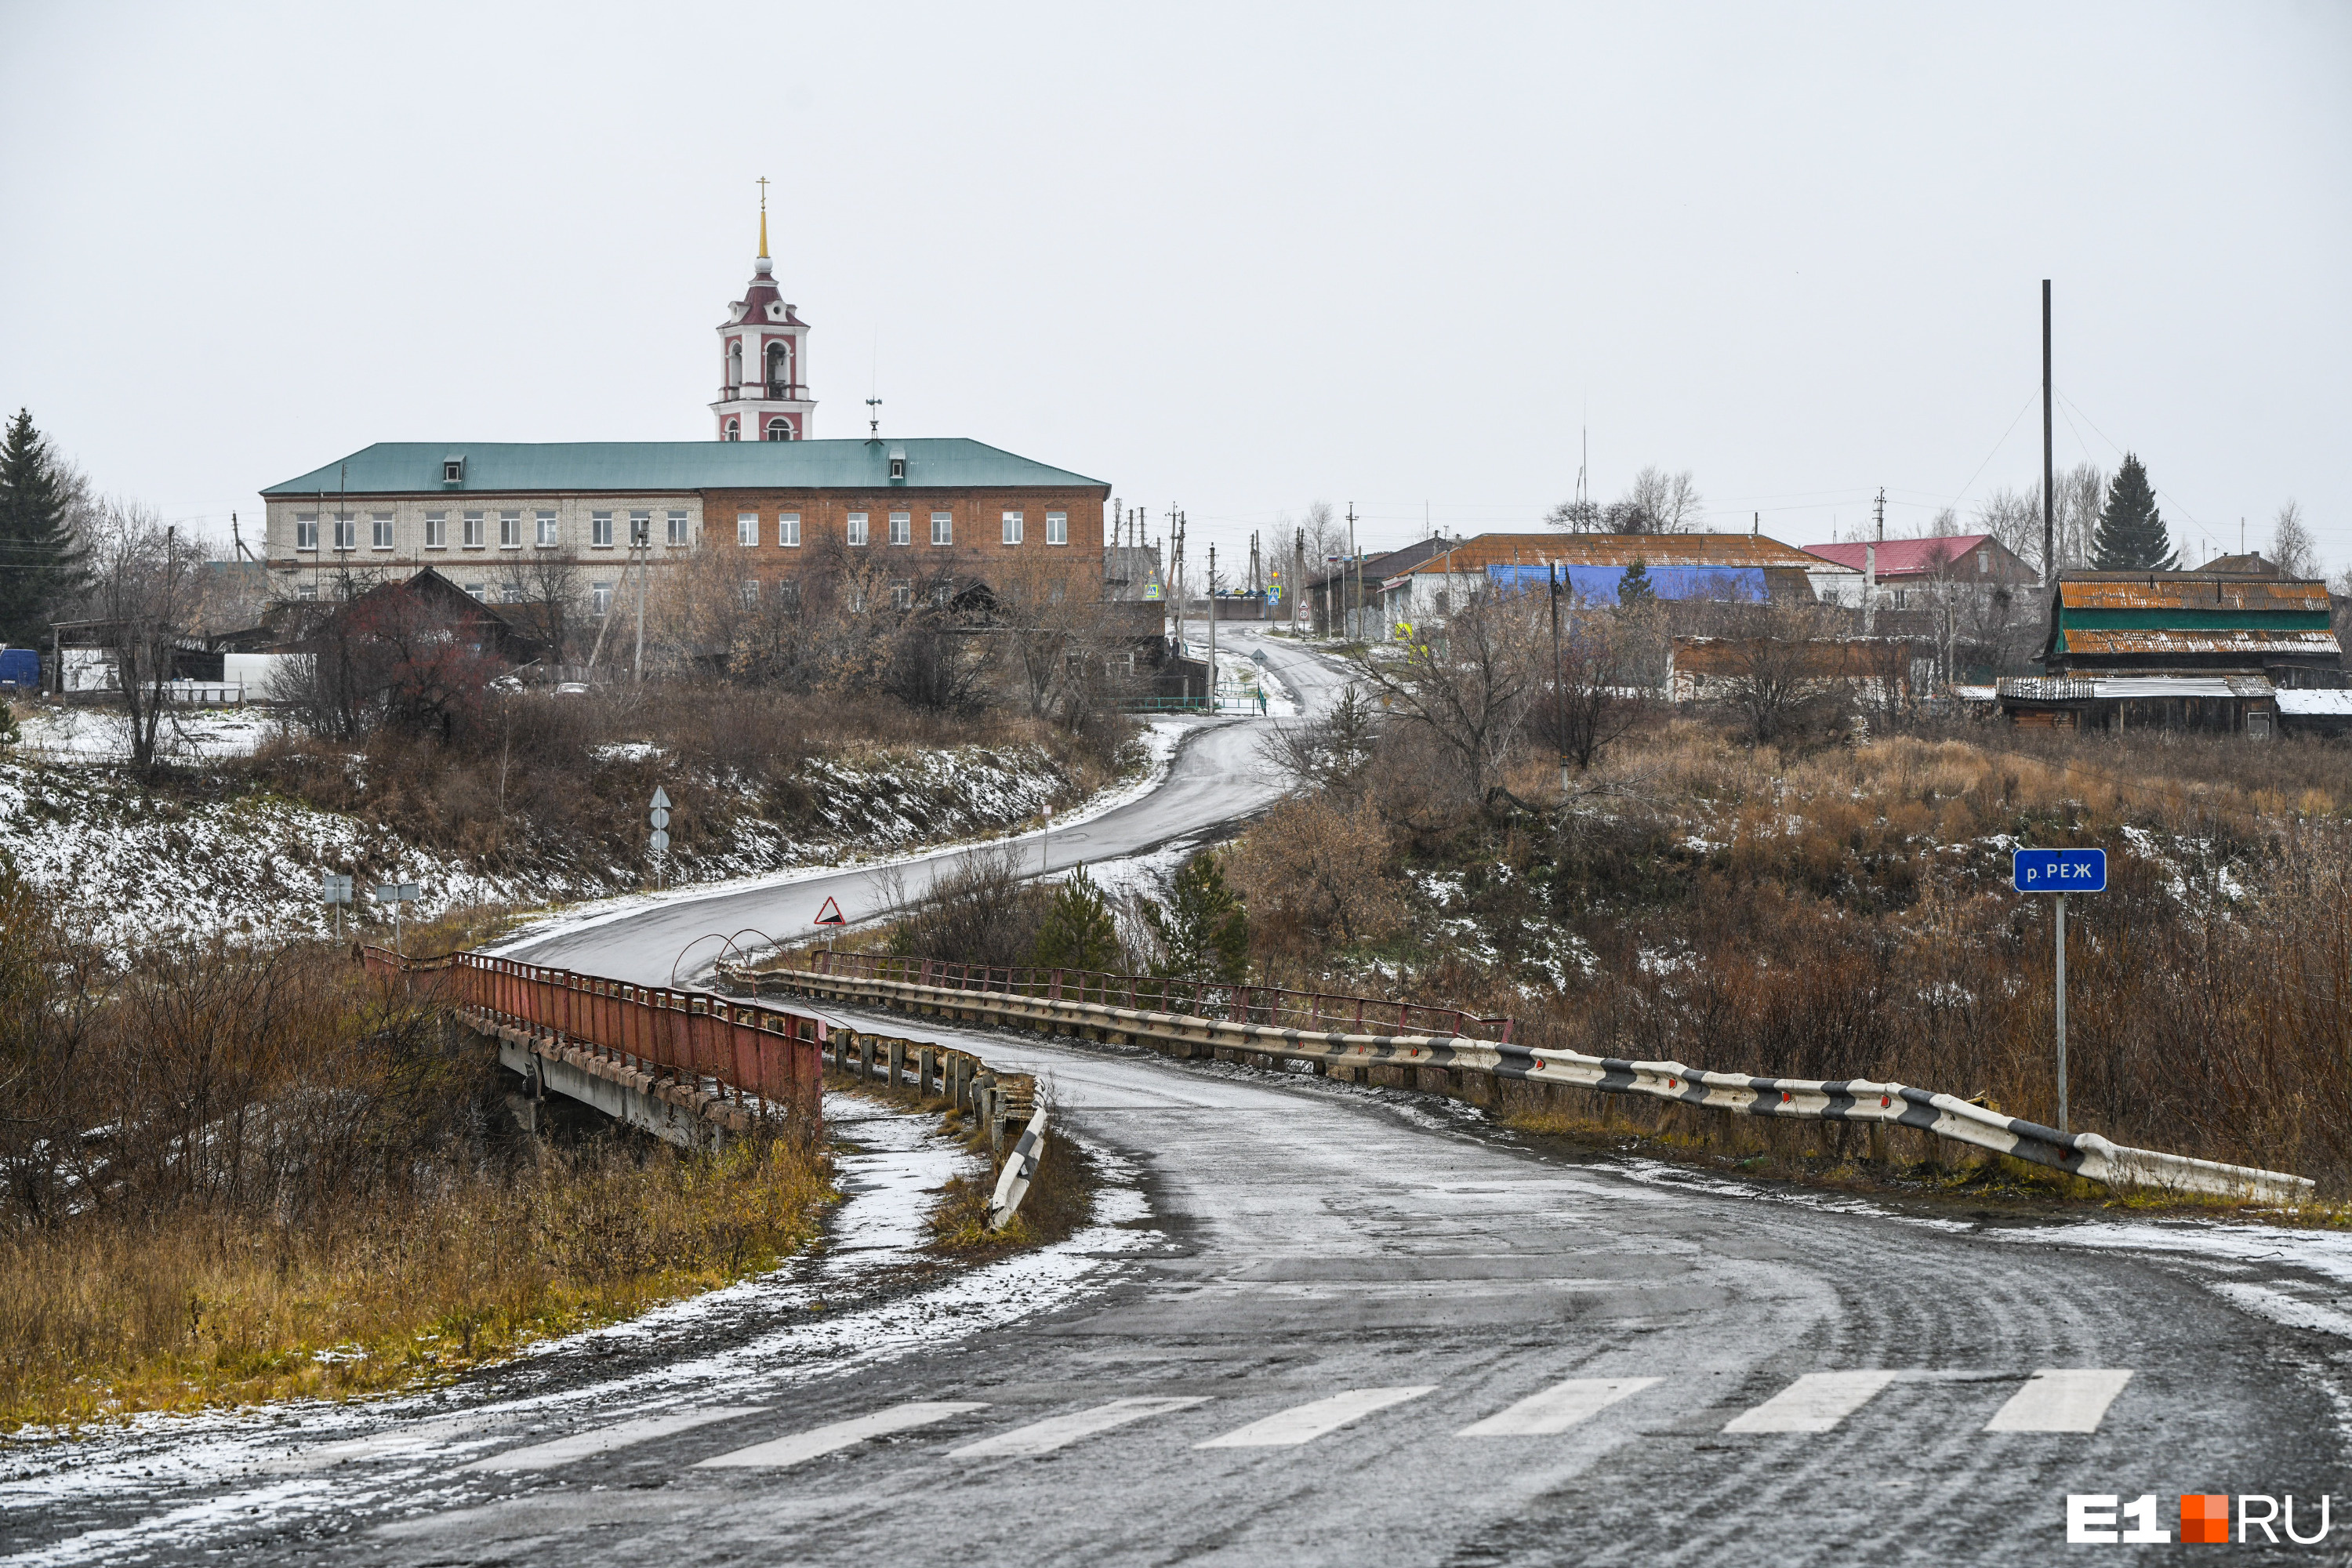 Расстояние от села до Артёмовского — 18 километров, до Екатеринбурга — 130 километров